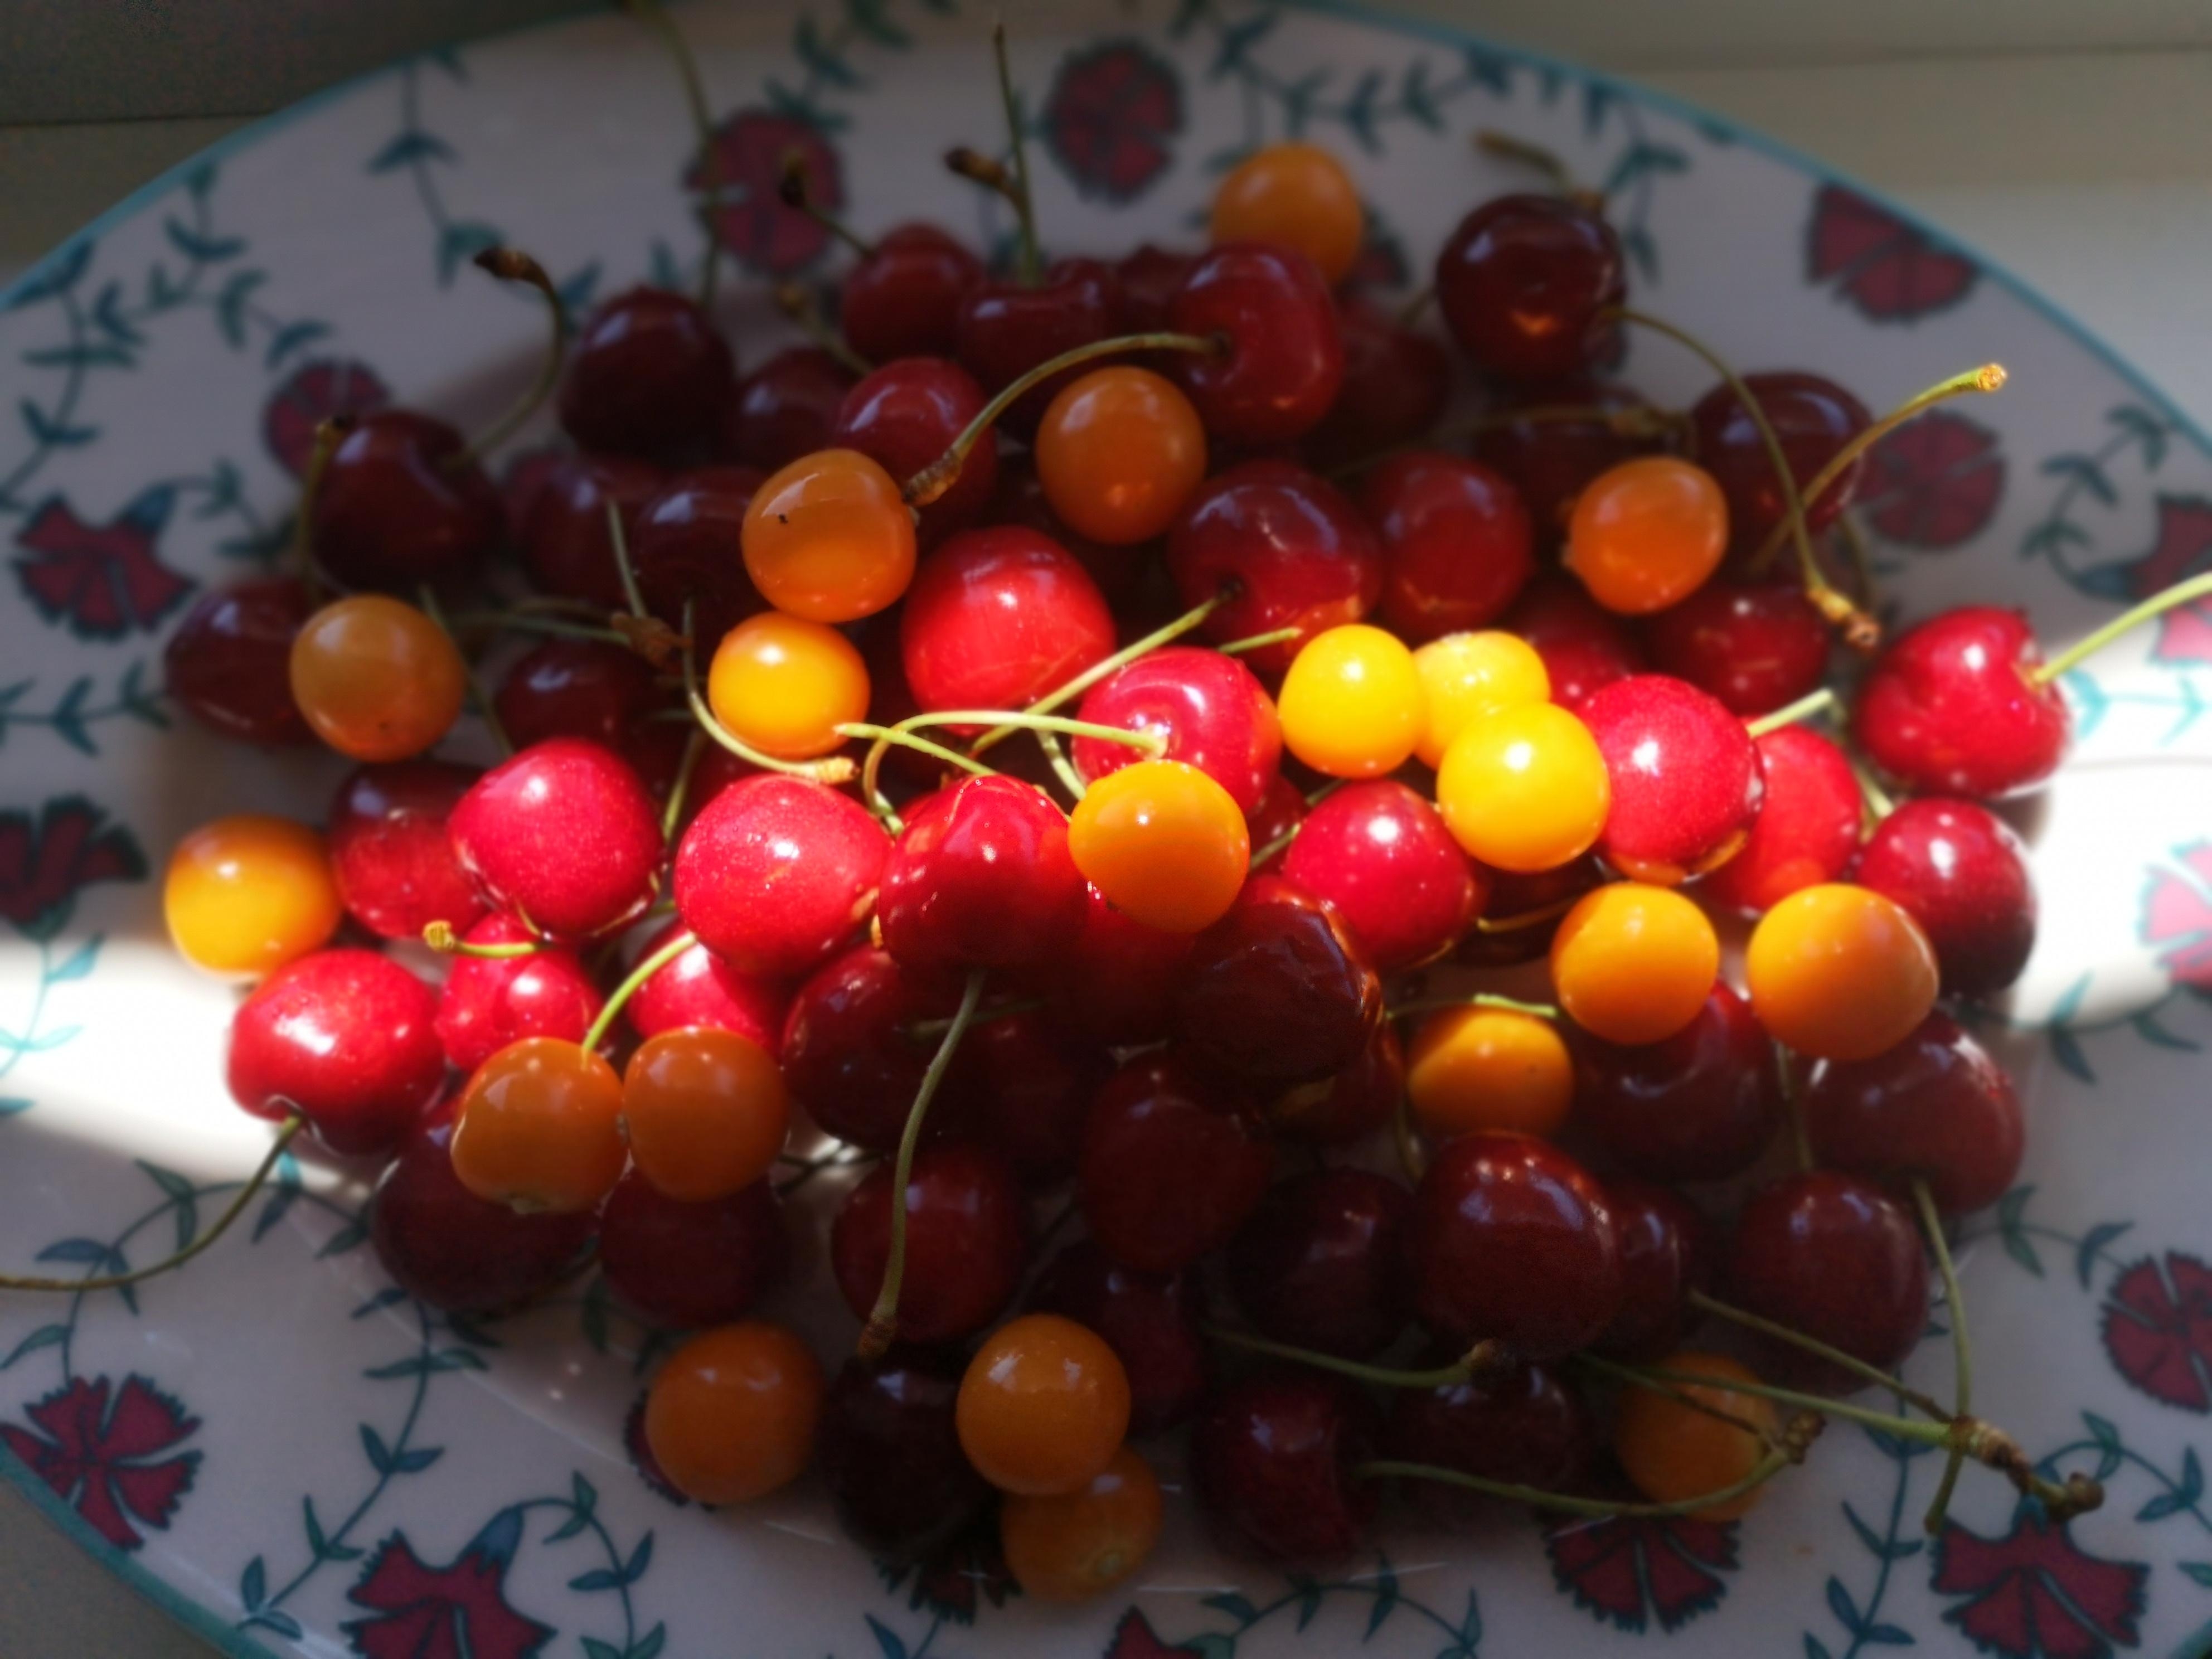 Cherry cherry lady🎶🎶🎶
#kirschen #snack 